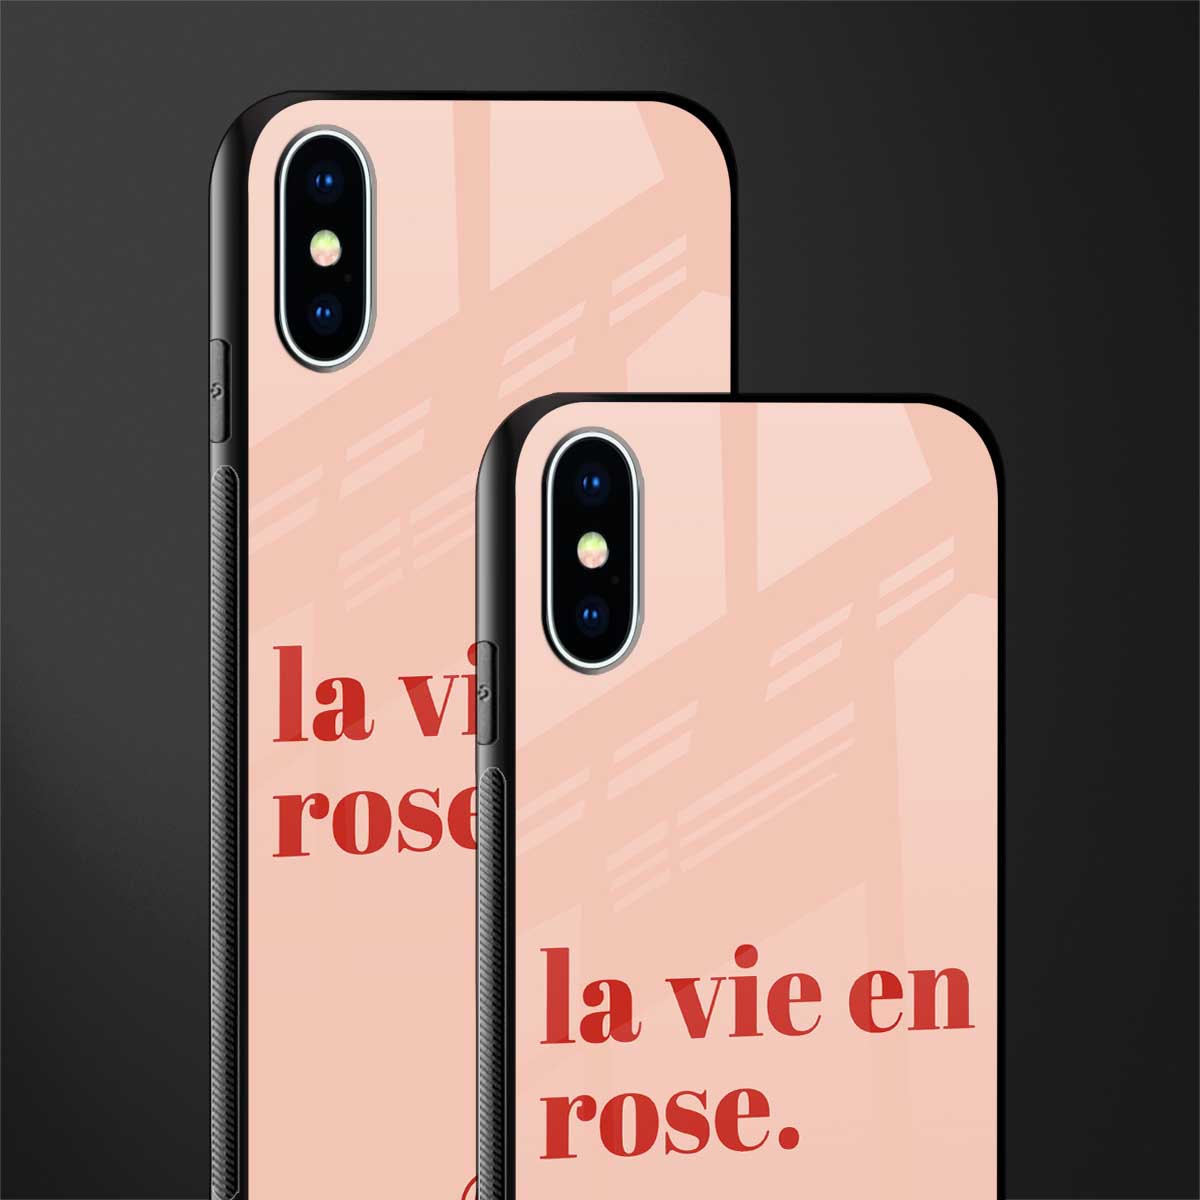 la vie en rose quote glass case for iphone xs image-2